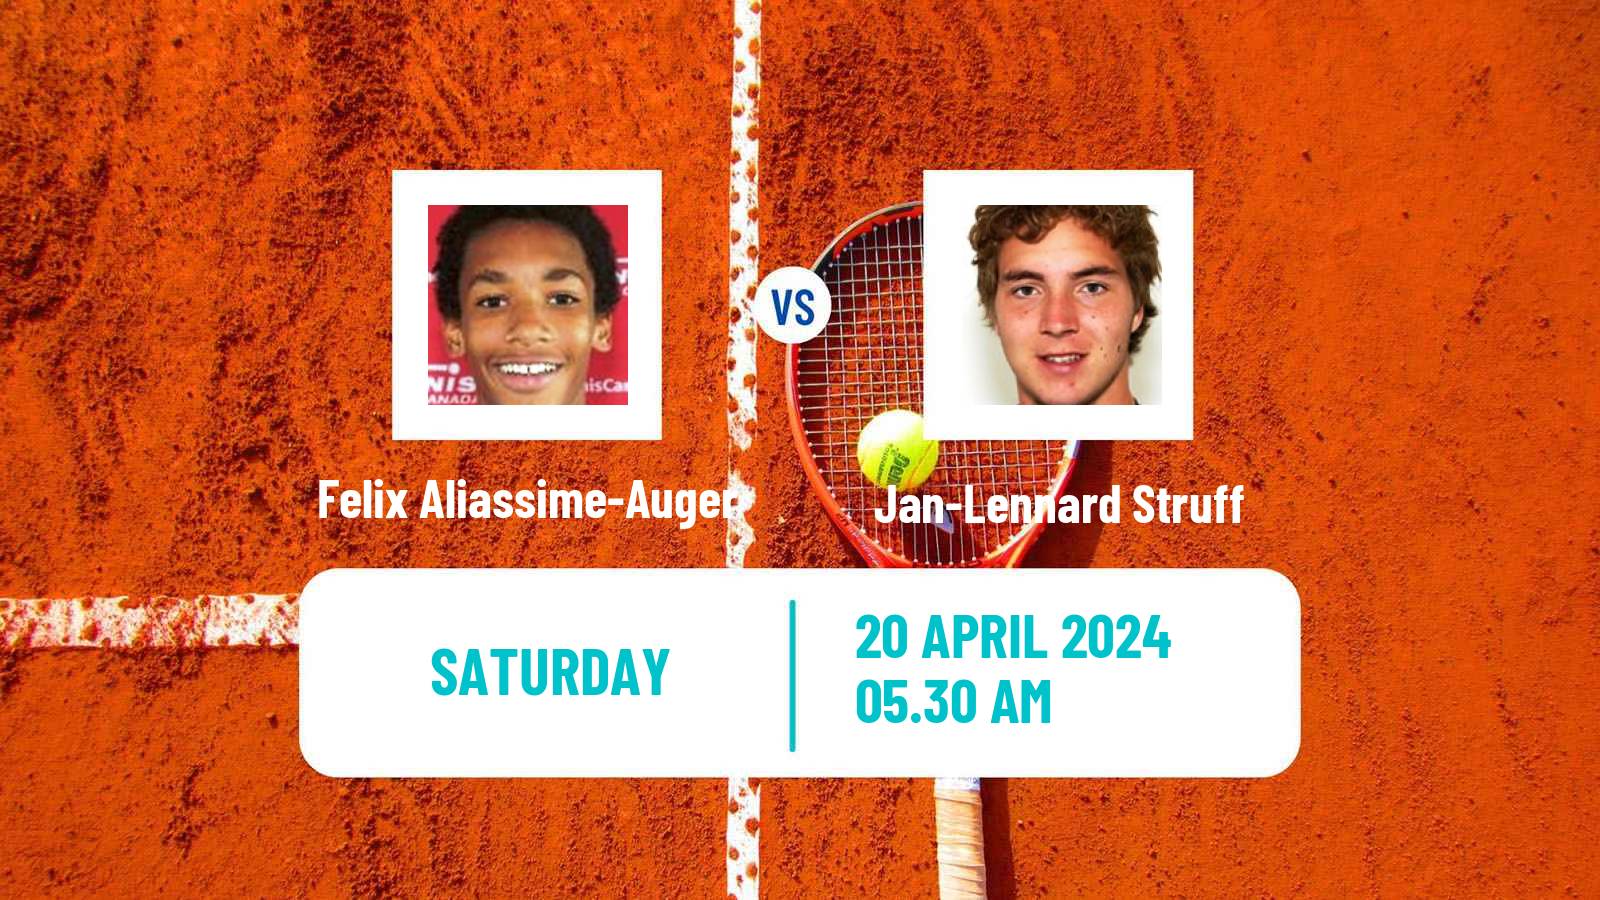 Tennis ATP Munich Felix Aliassime-Auger - Jan-Lennard Struff